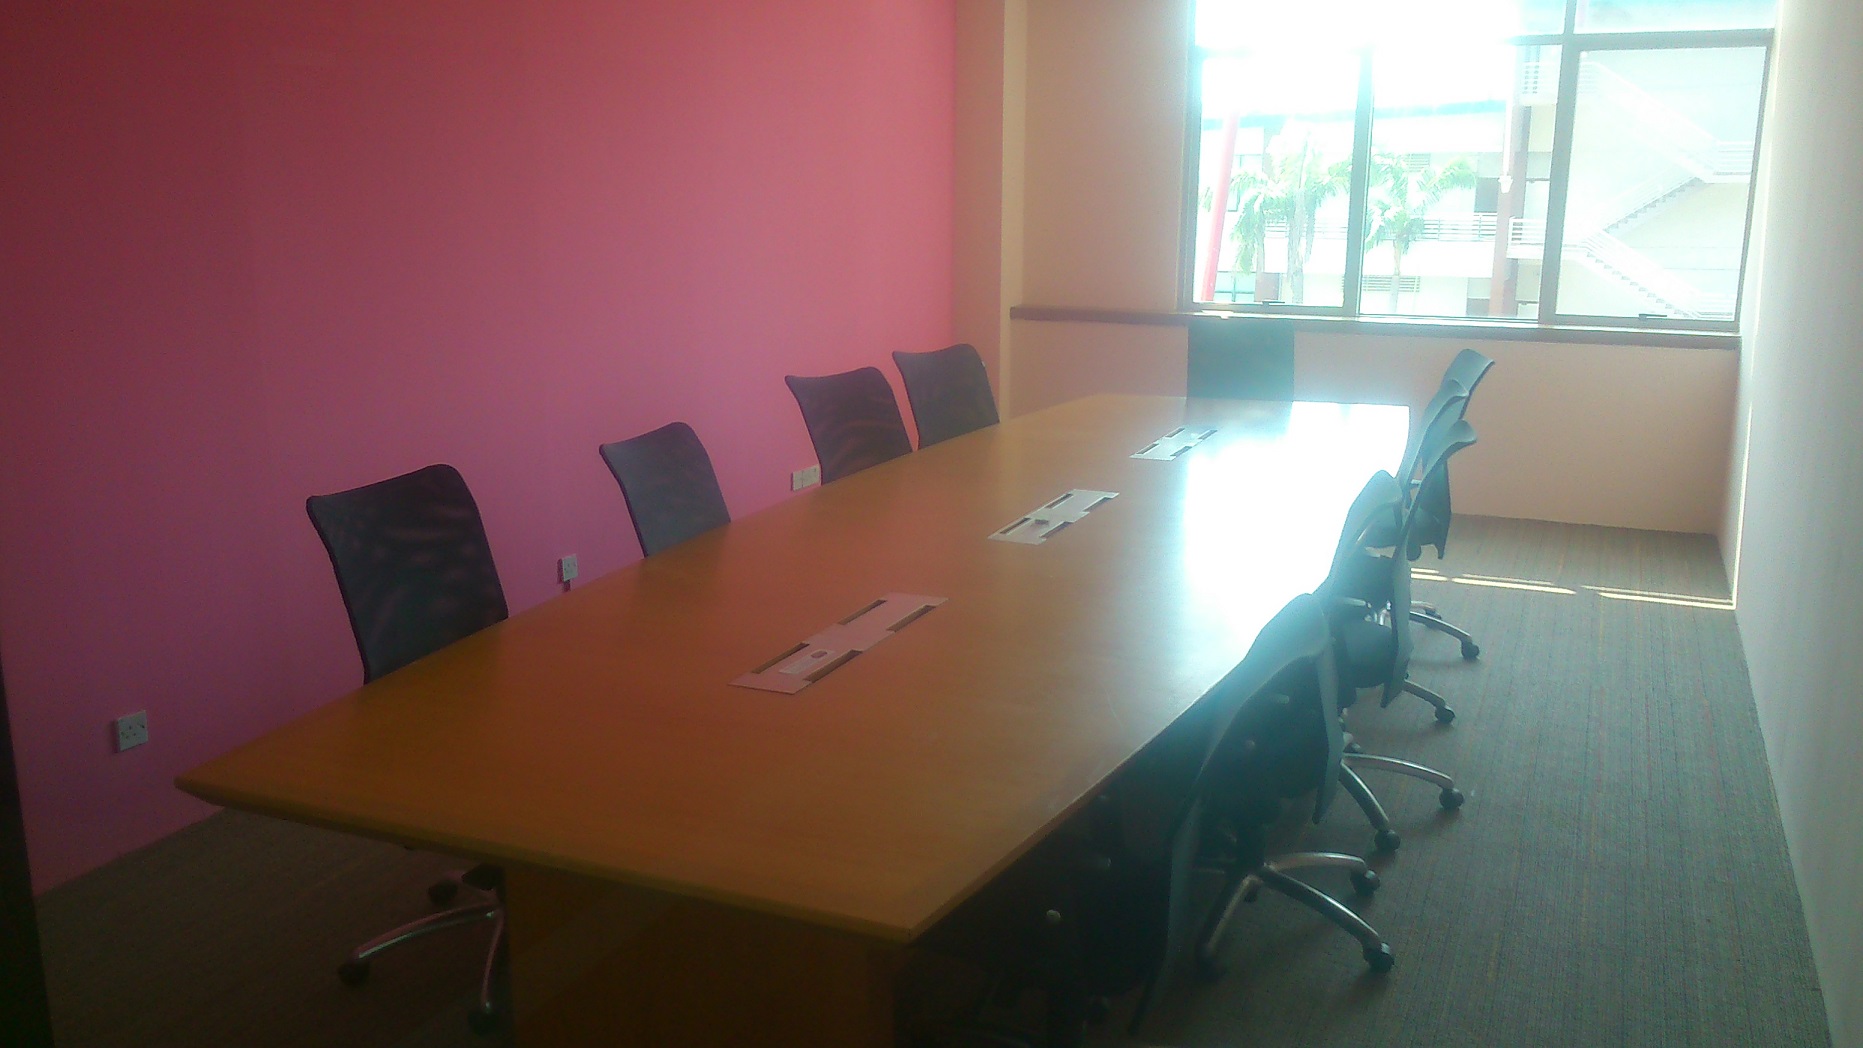 MeetingSpace